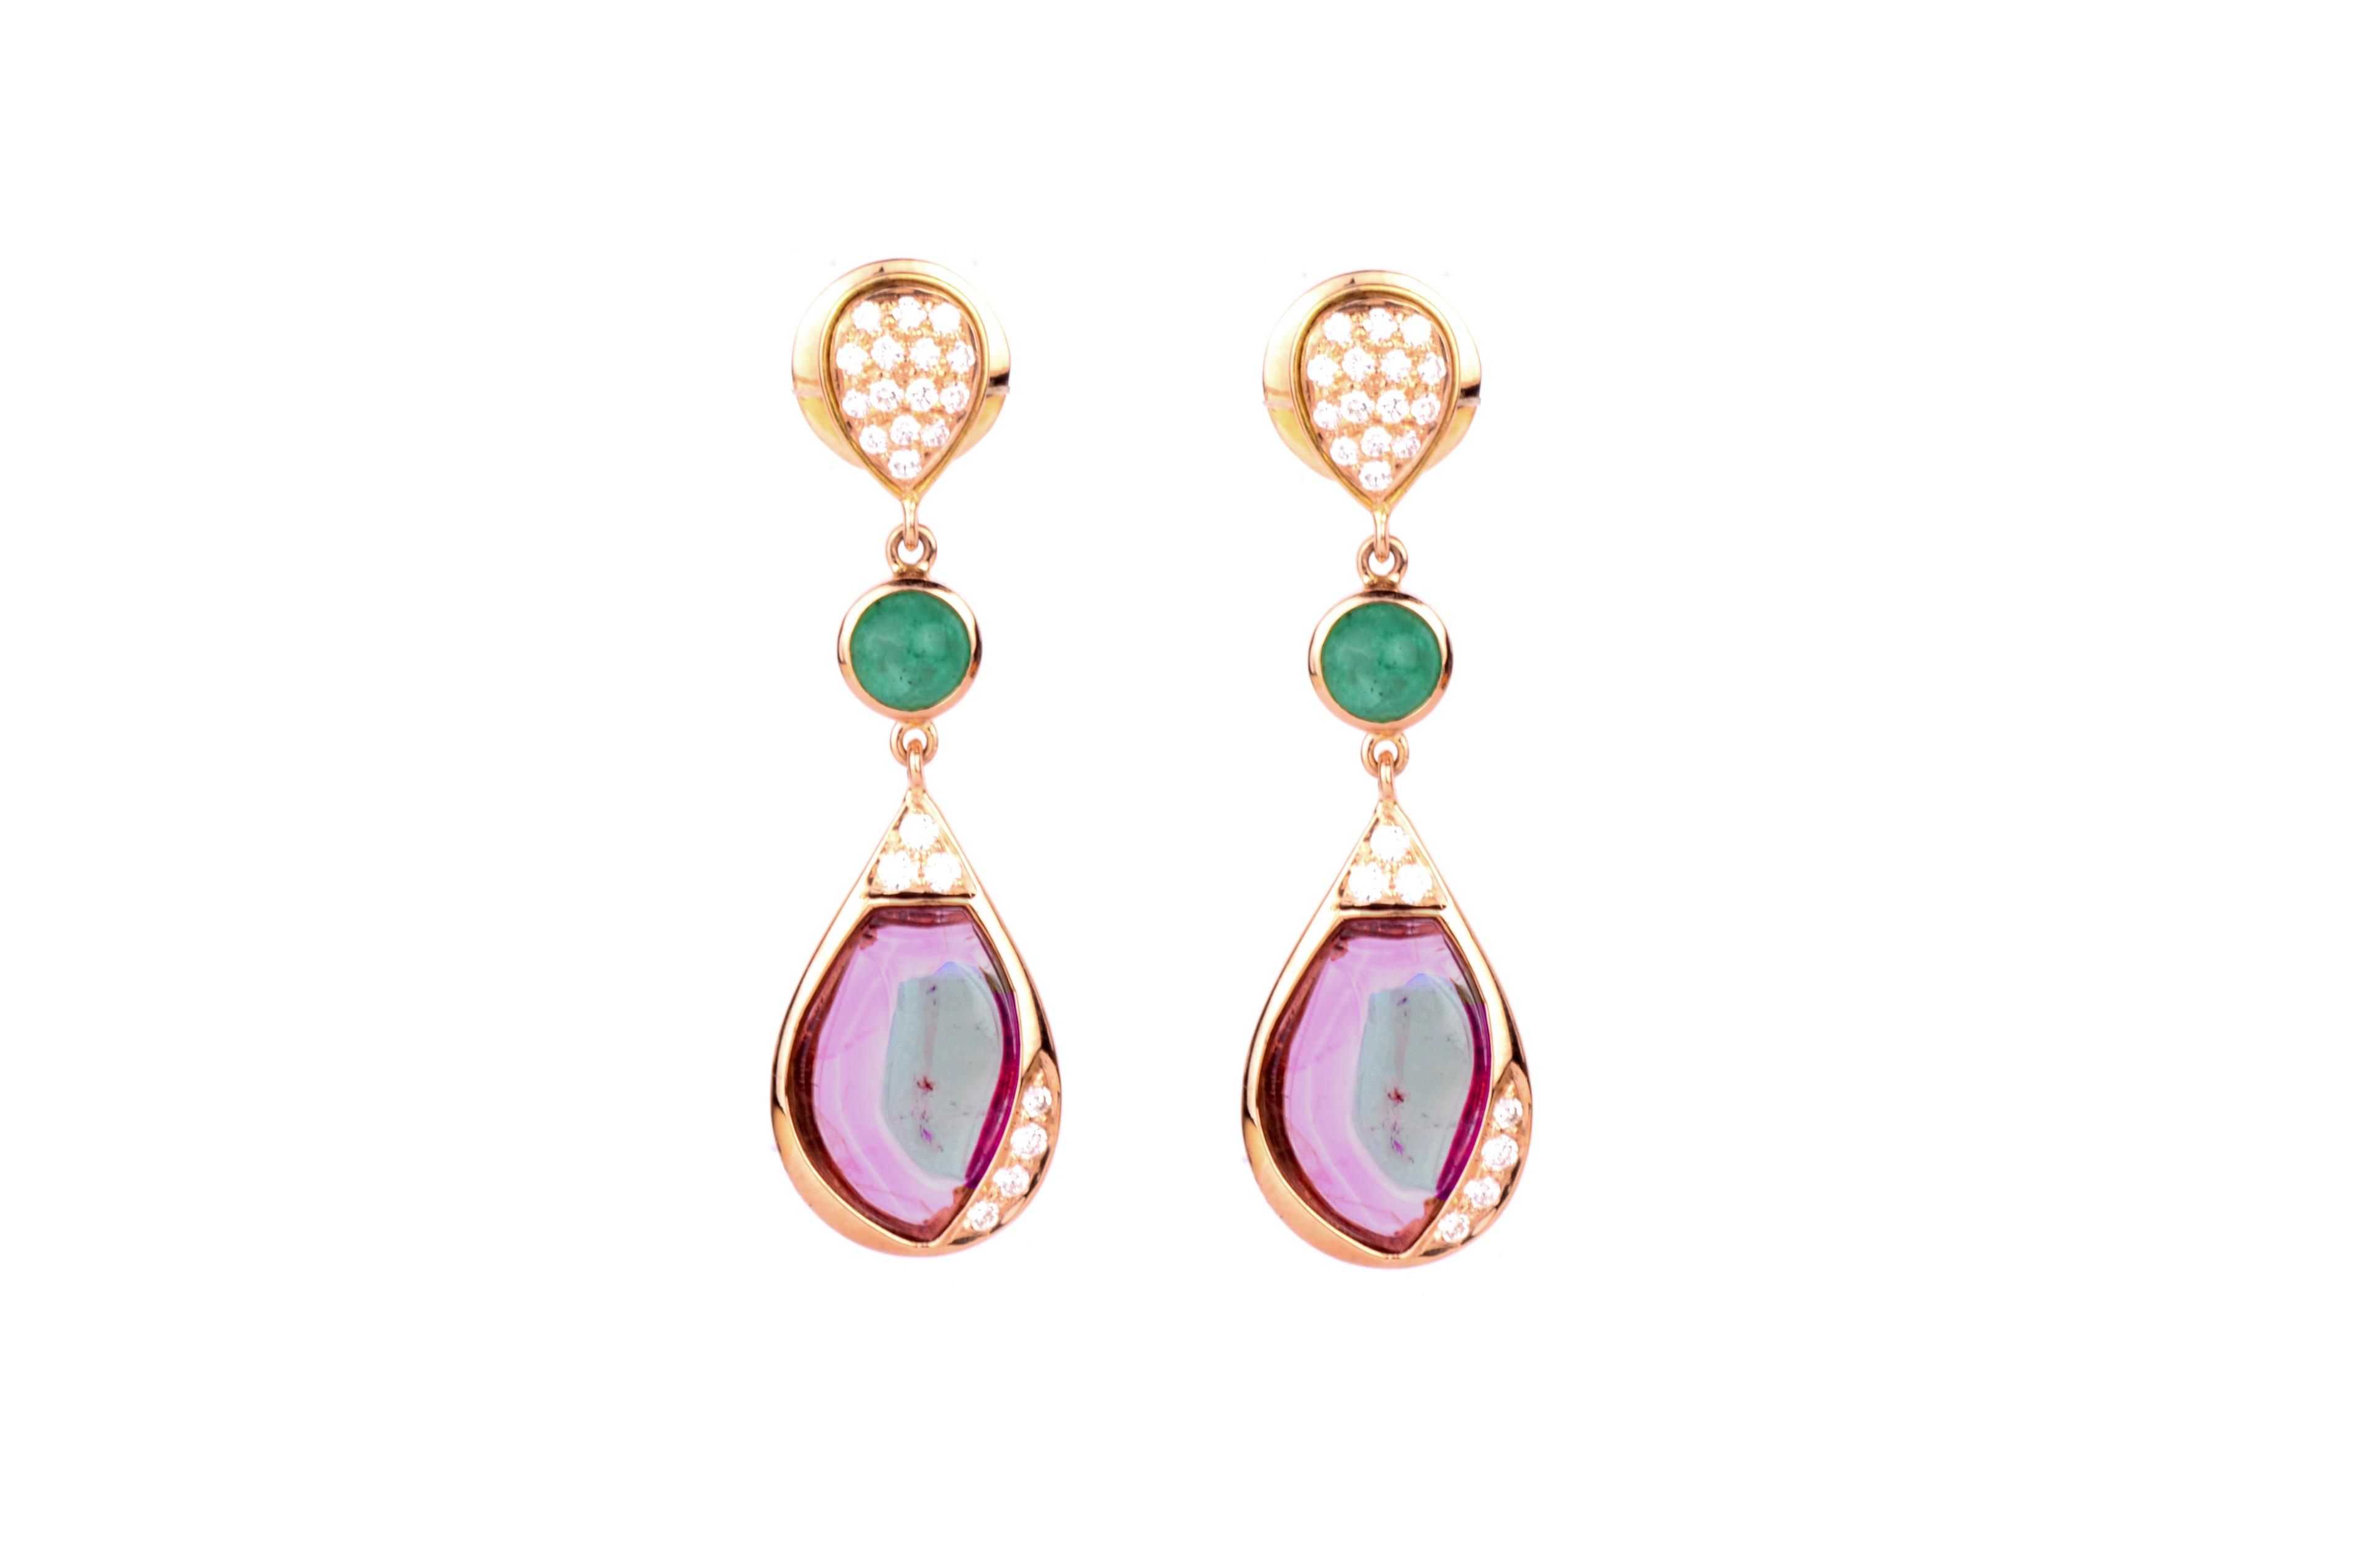 18K Yellow Gold Gold Diamond,Tourmaline,Emerald Earrings for women